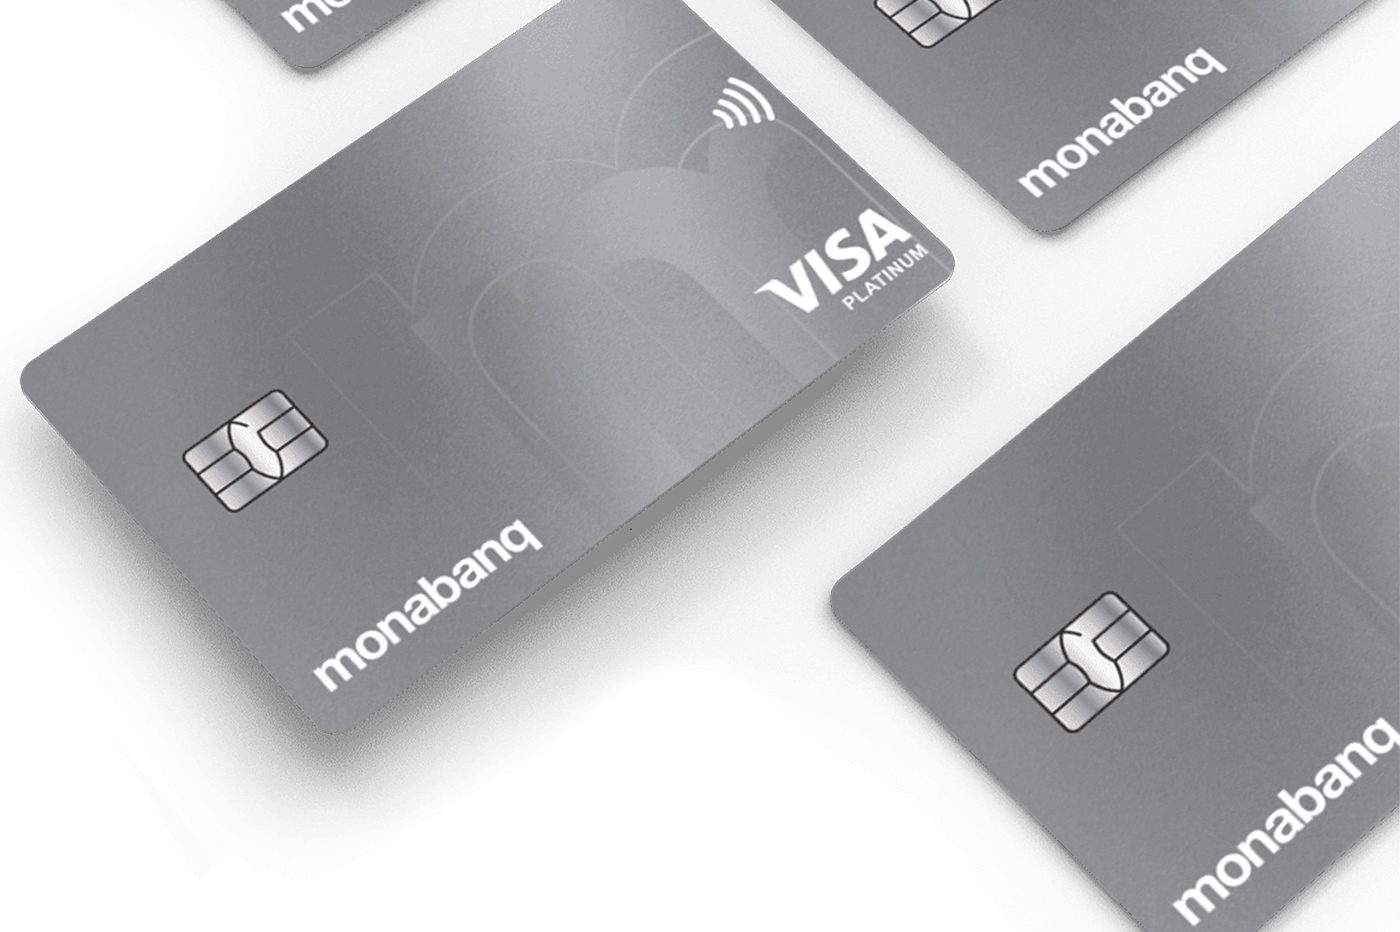 Carte bancaire Monabanq : quelle carte Visa choisir dans la gamme ?